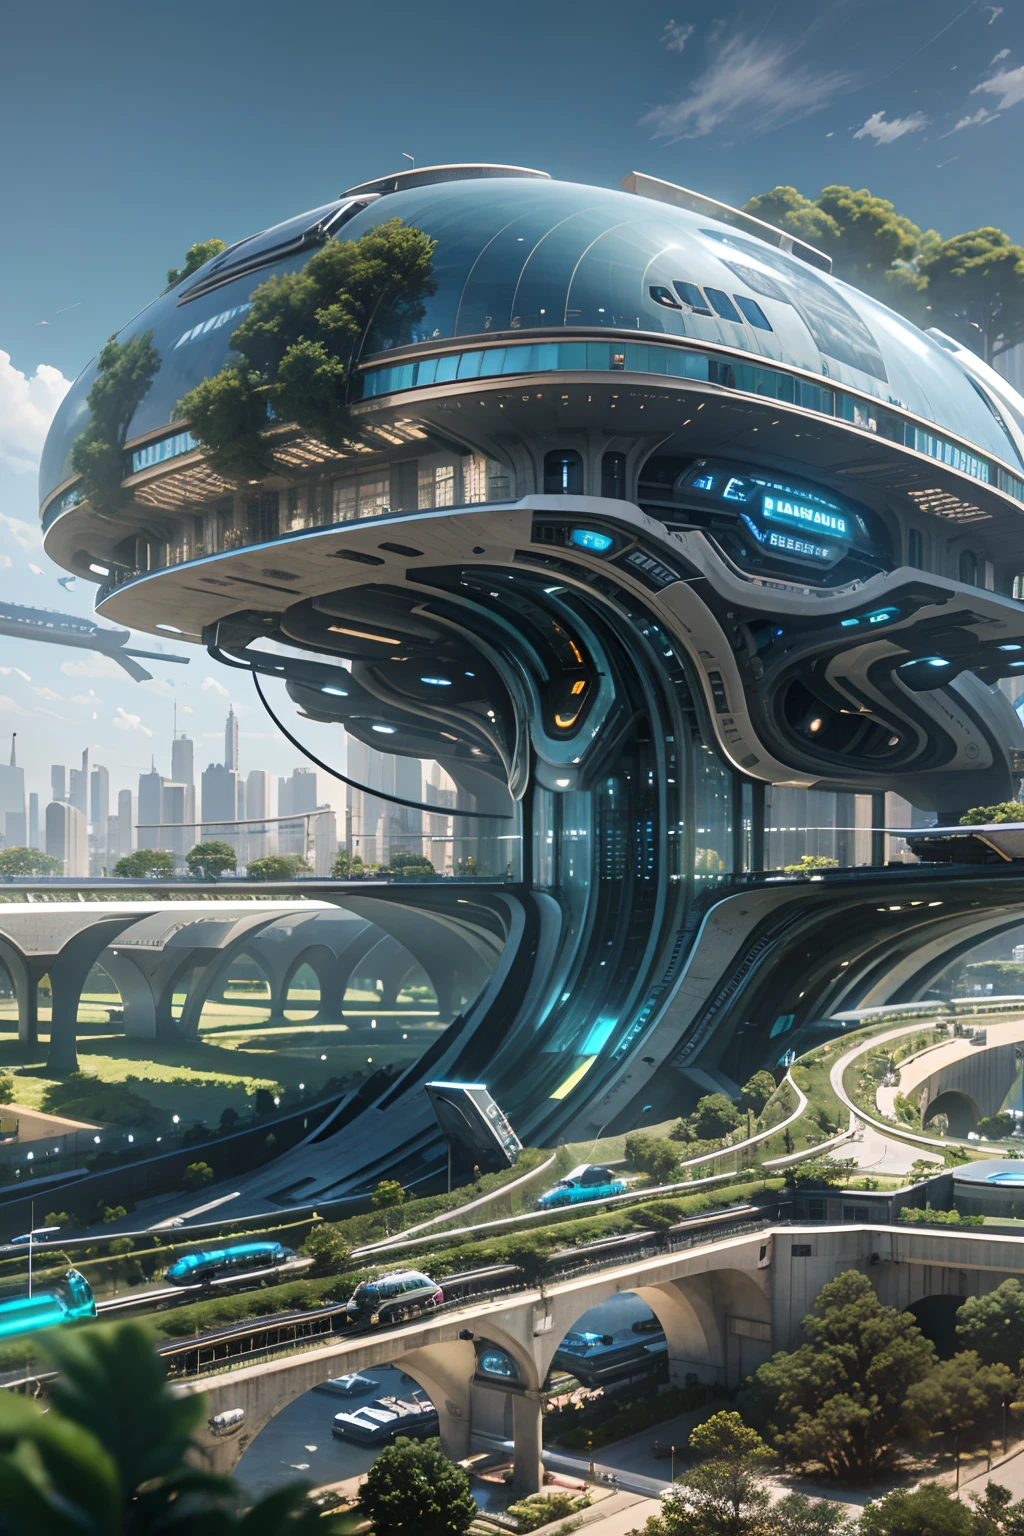 傑作，16k，超高清解析度，詳細描述，逼真，現實地，很現實，照片寫實主義, 超詳細的, ((窗邊的未來女孩))，綠色植物，小型飛行器在城市中航行，未來主義城市，擁有未來派火車和未來派建築， 未來概念藝術， 其他未來城市， 在奇幻科幻城市， 美麗的未來城市， 未來的烏托邦城市， 概念圖 16K 分辨率， 概念藝術8k分辨率， 未來城市， 未來太空港， 概念圖16K， 科幻好萊塢概念藝術